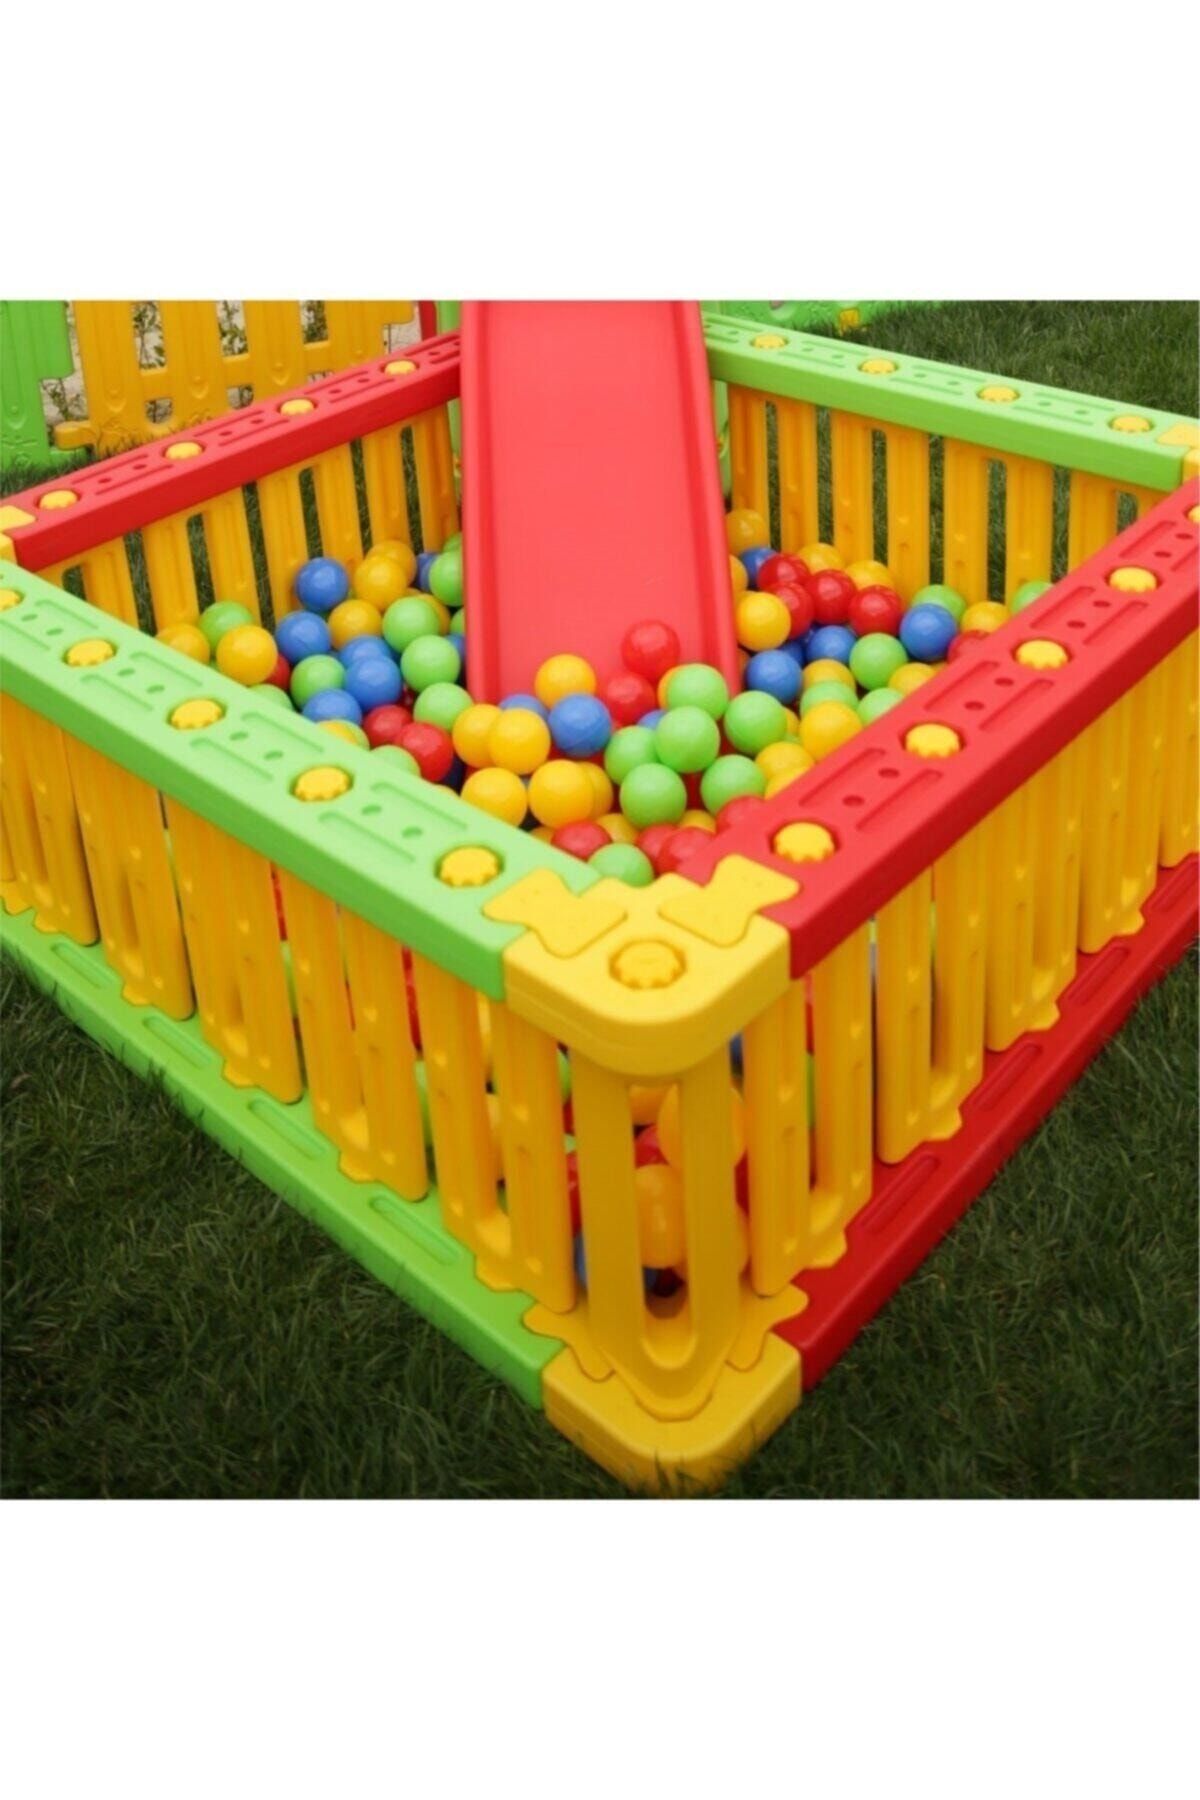 Genel Markalar Oyun Çiti Oyun Alanı Top Havuzu 3 Renk - Çocuk Oyun Parkı - Güvenli Alan - Top Havuzu - Aktivite